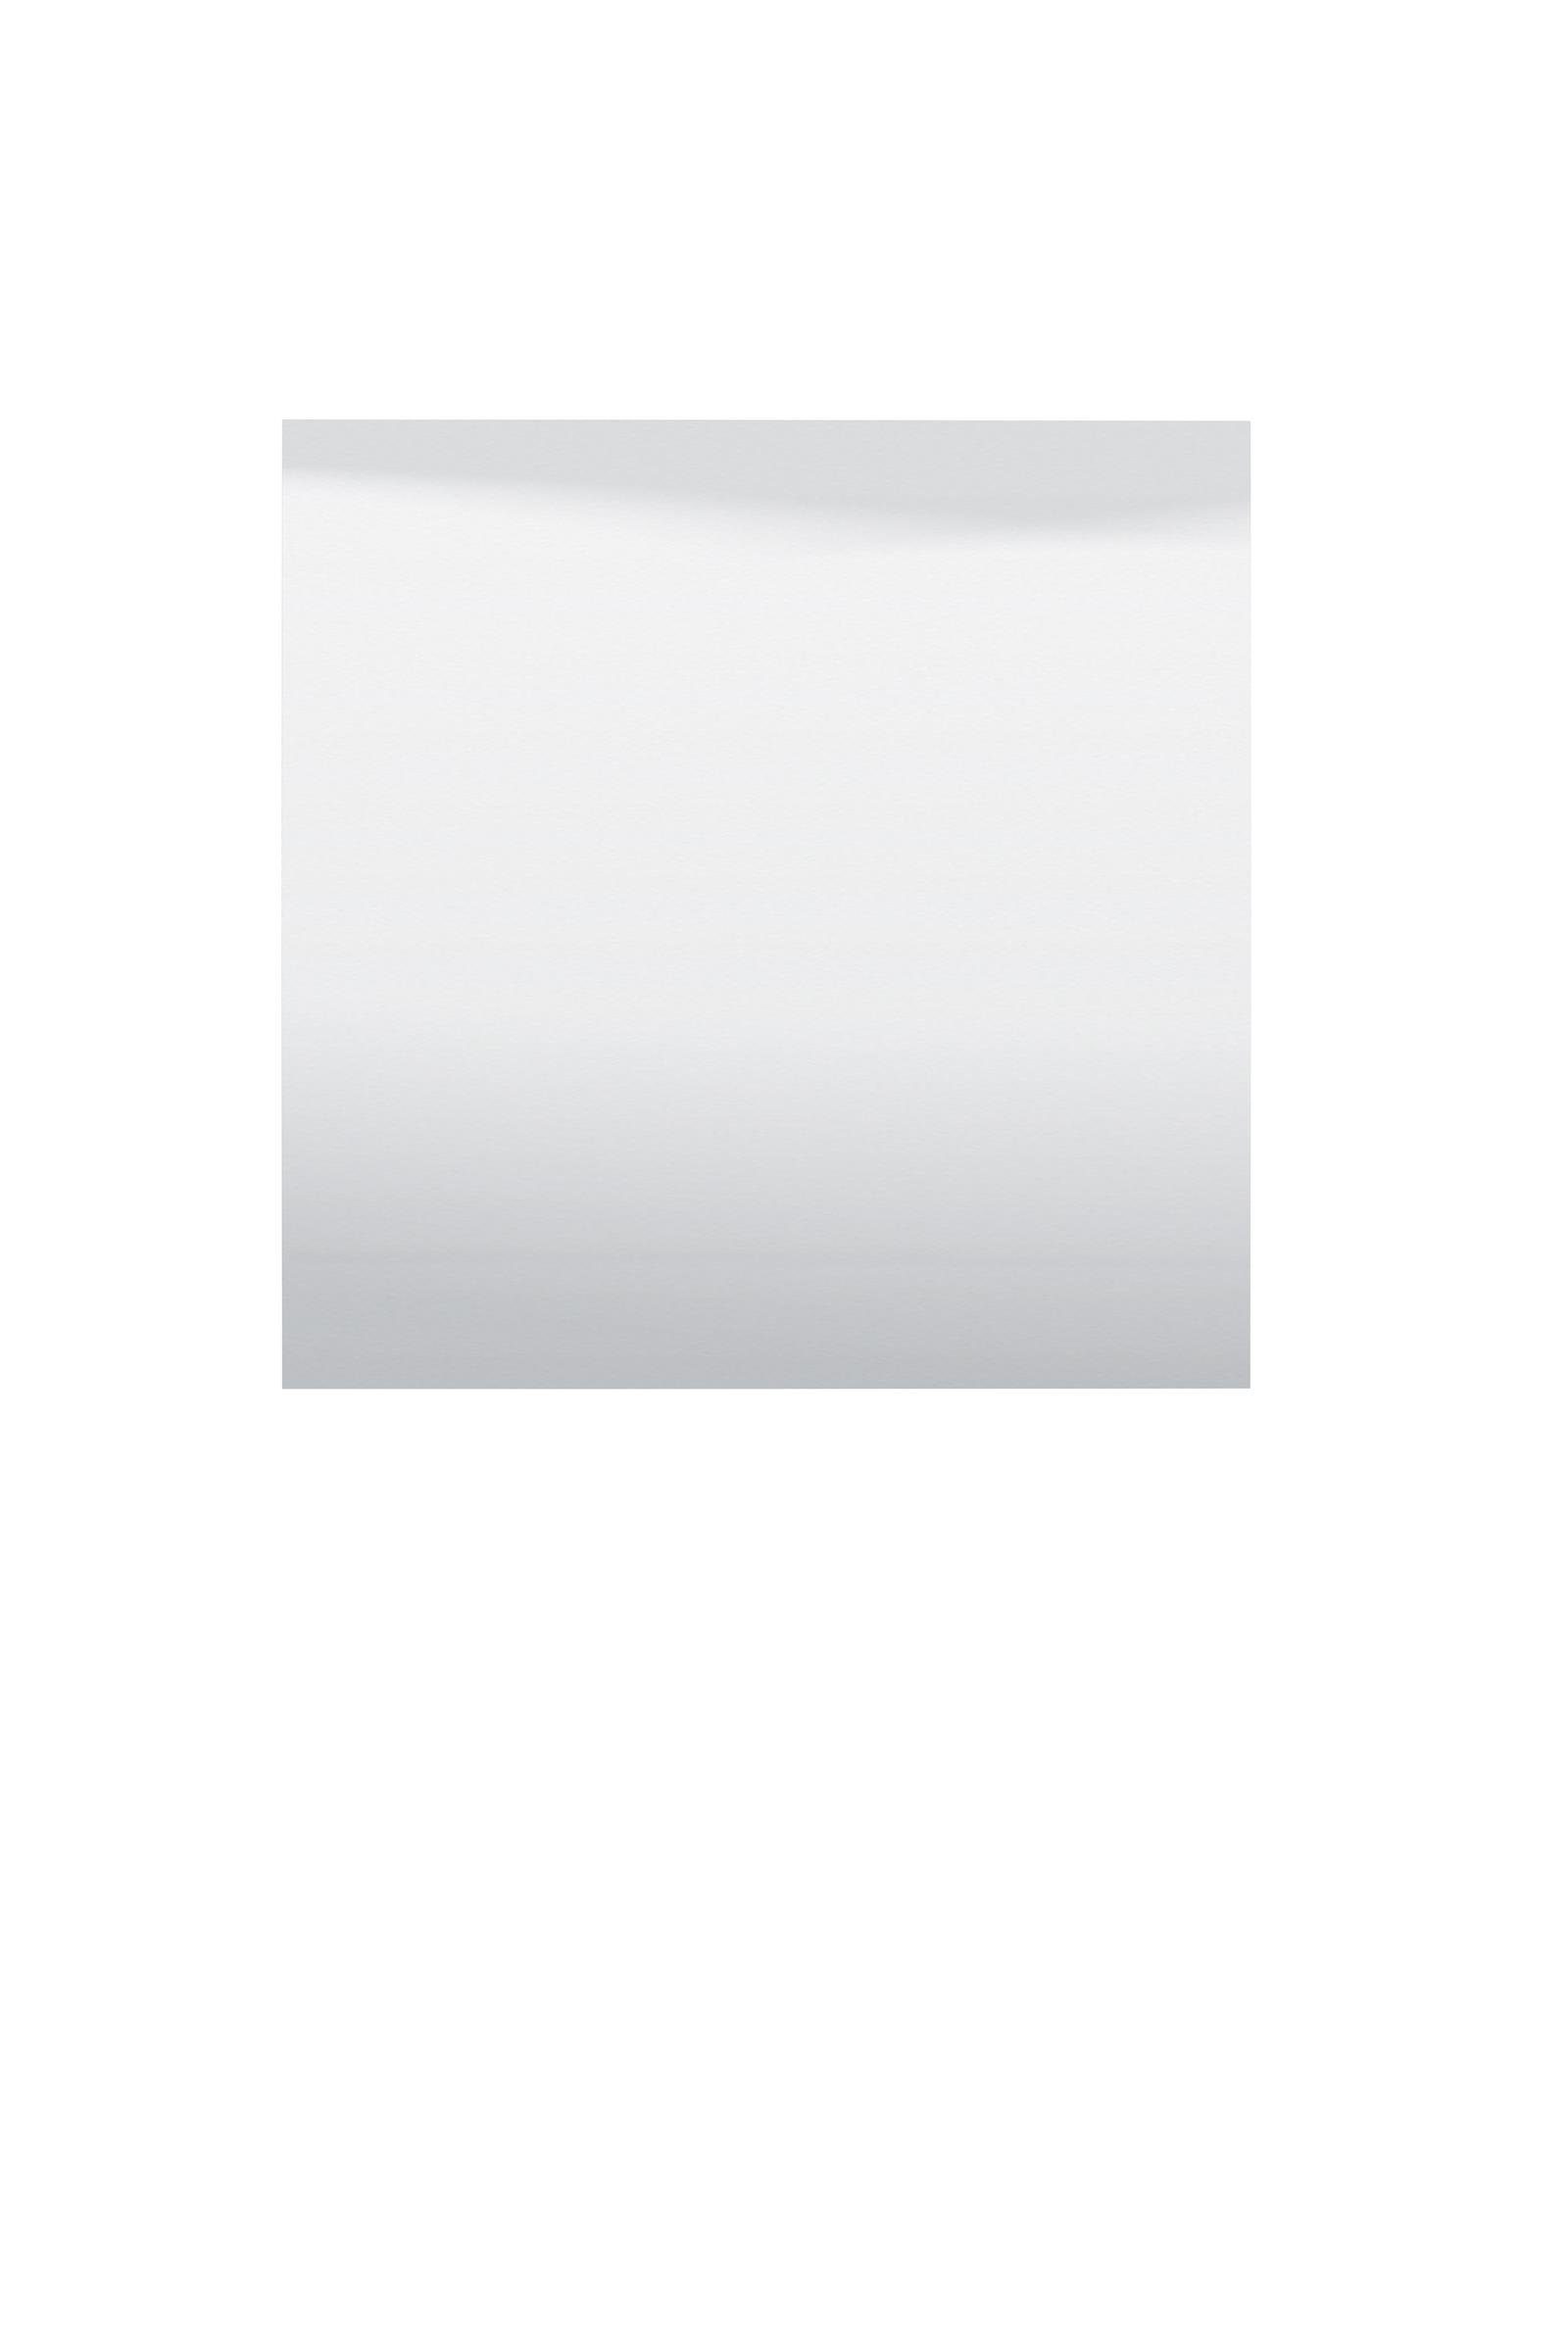 möbelando Wandspiegel Sabac, Moderner Spiegel, Trägerplatte aus melaminbeschichteter Spanplatte in Artisan Eiche Nachbildung. Breite 80 cm, Höhe 80 cm, Tiefe 2 cm